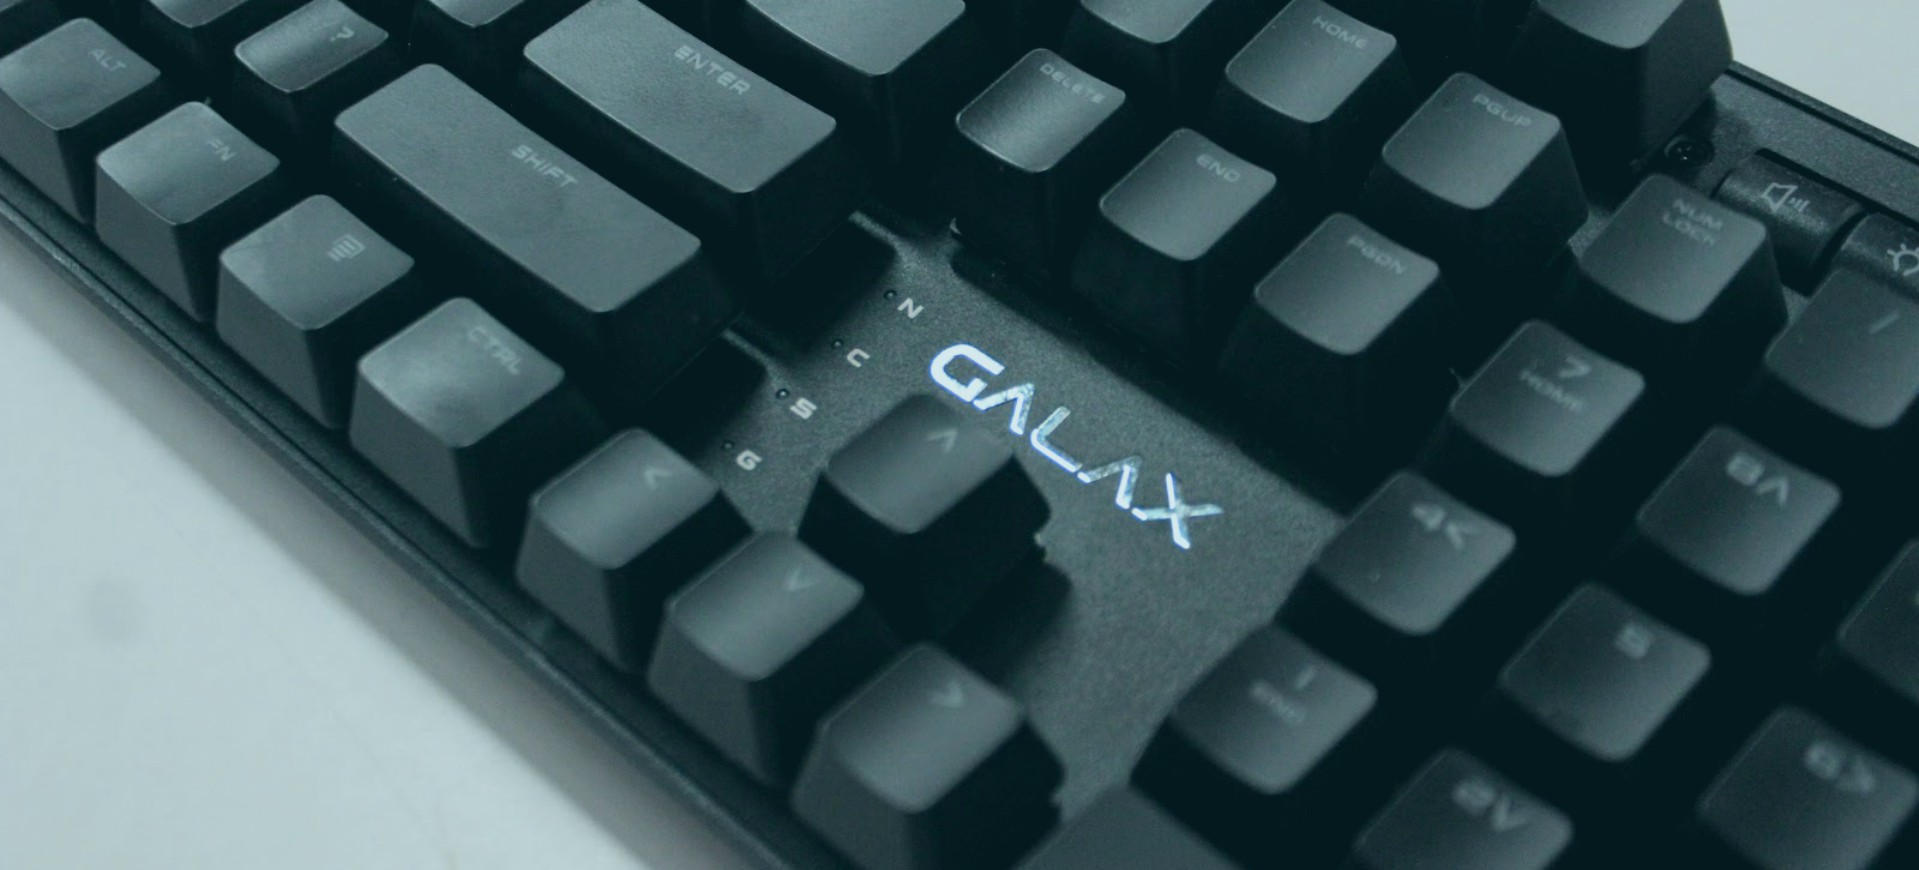 Galax HOF Gaming Keyboard - Gã "quý tộc đen"